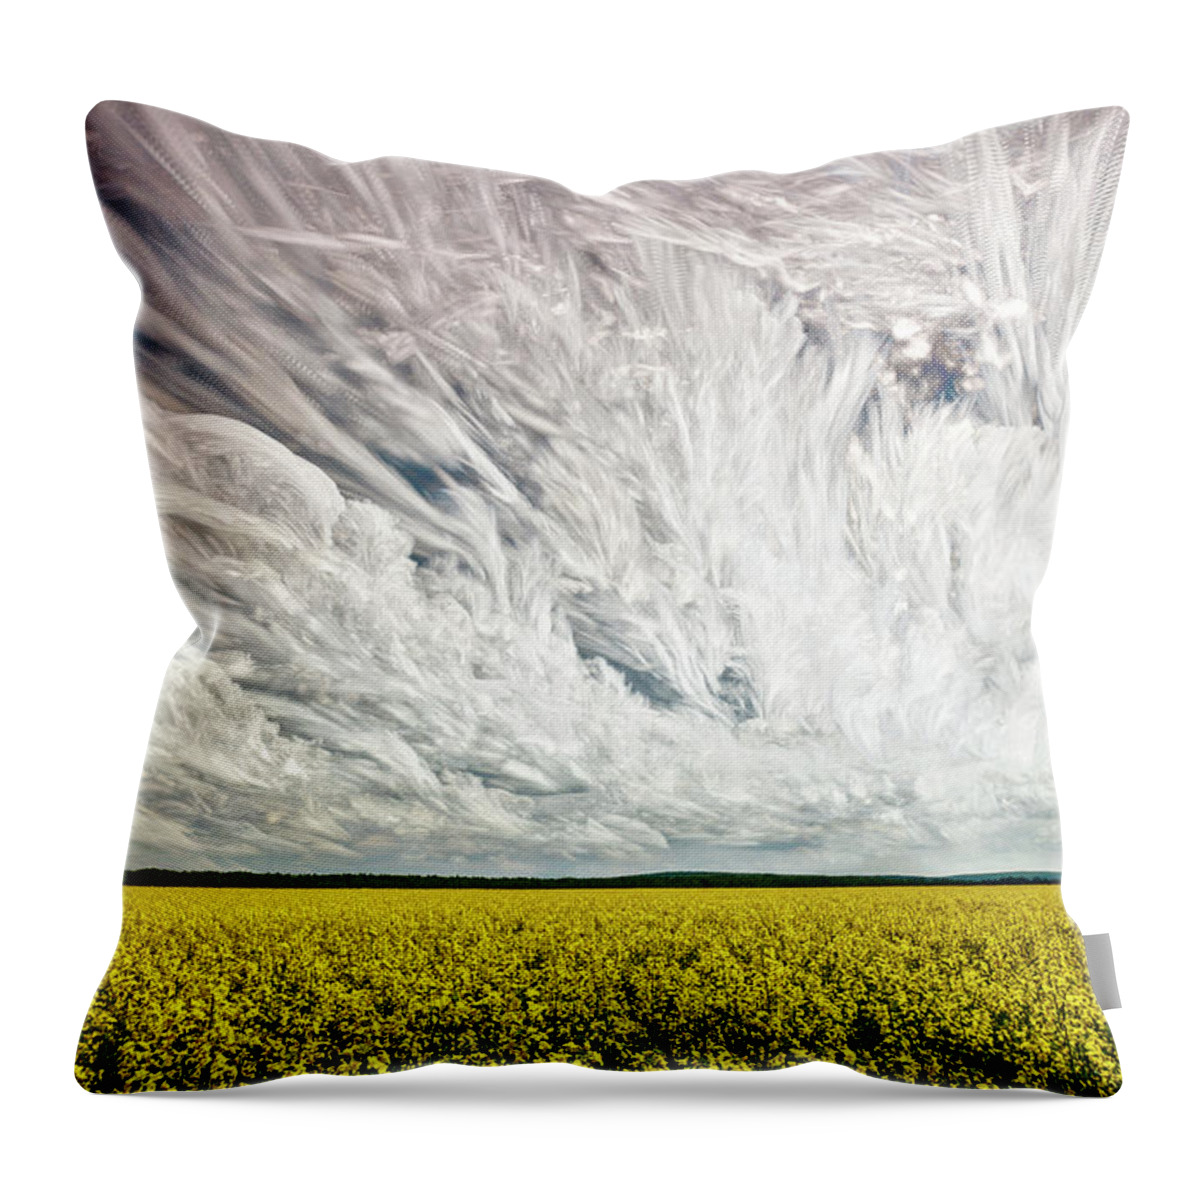 Matt Molloy Throw Pillow featuring the photograph Wild Winds by Matt Molloy